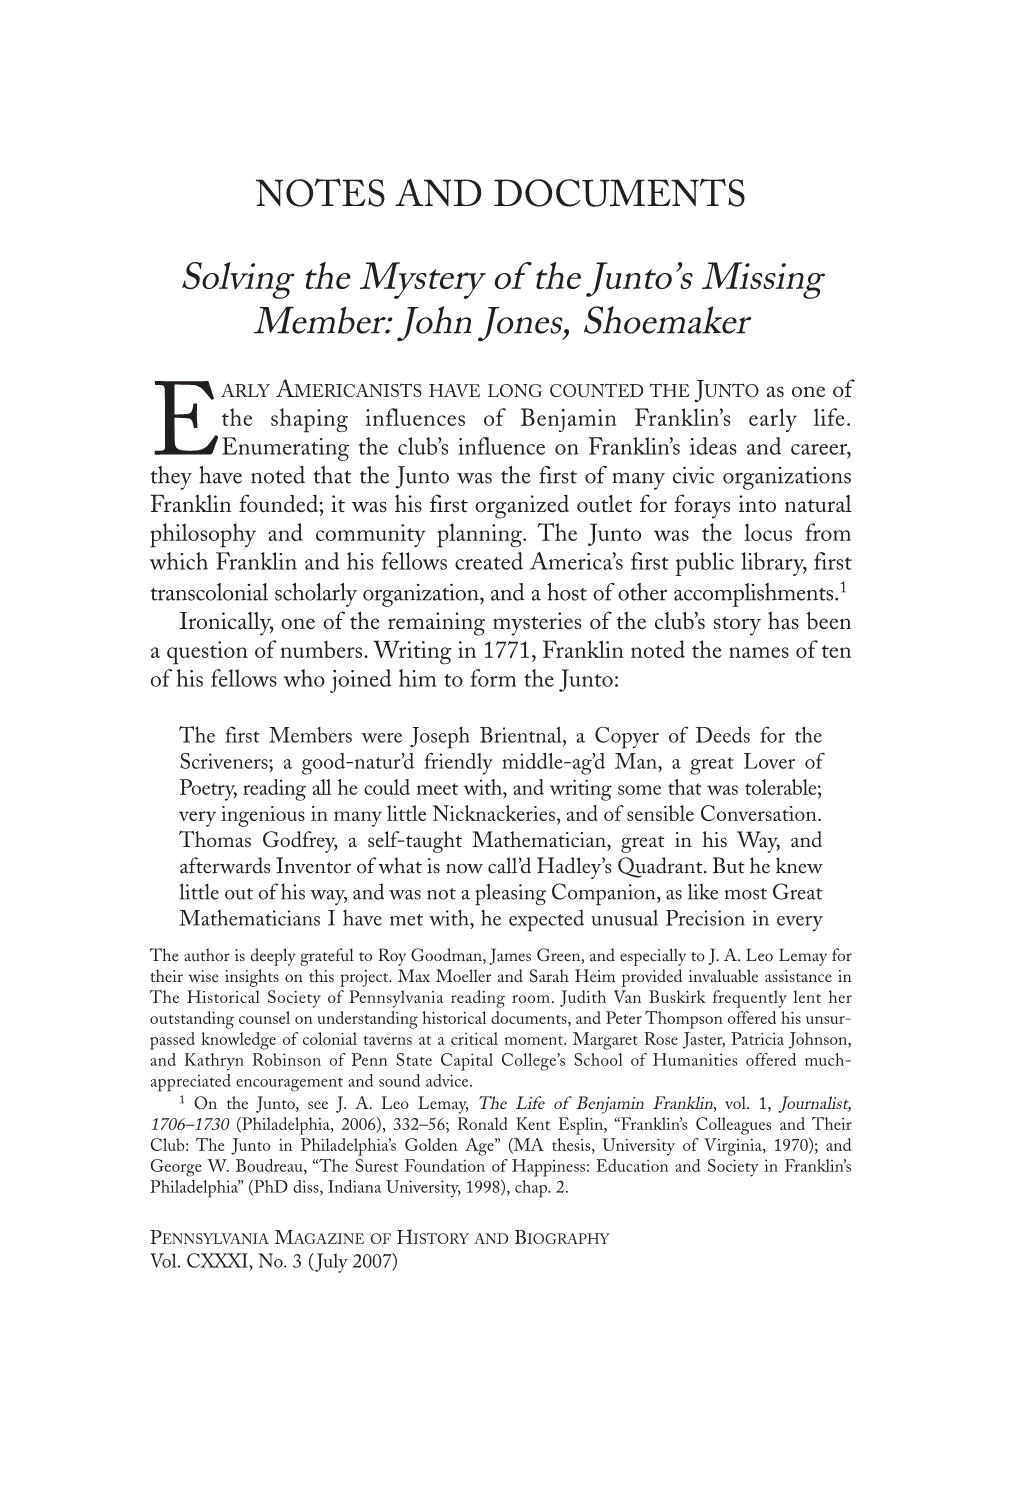 Solving the Mystery of the Junto's Missing Member: John Jones